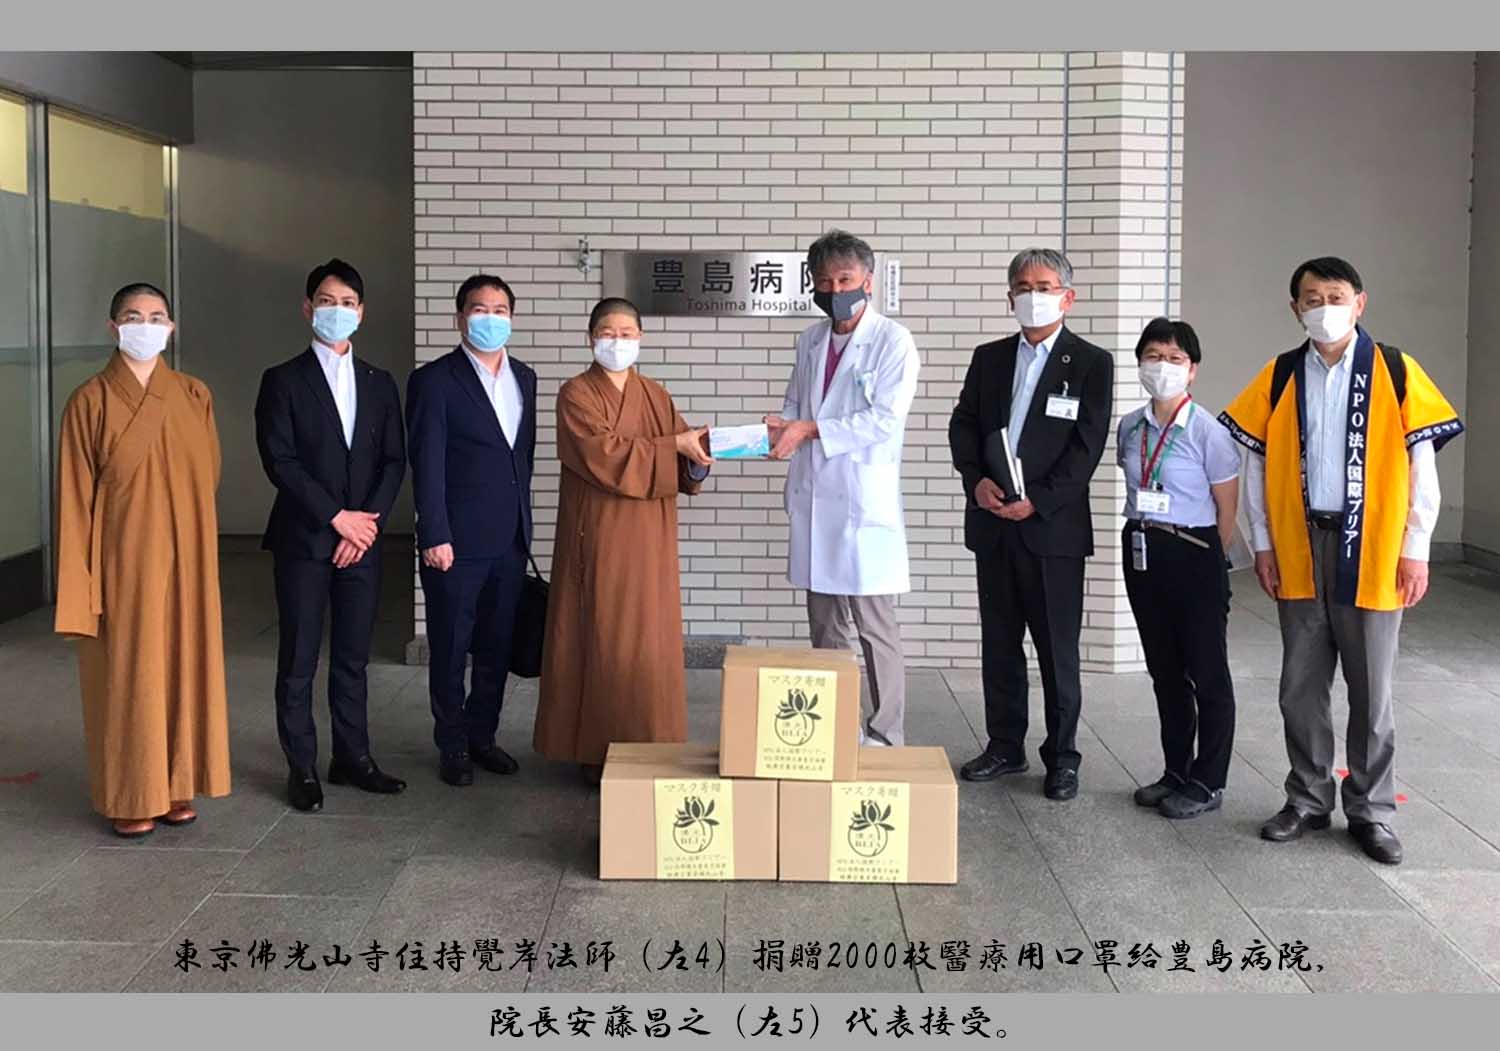 3東京佛光山寺住持覺岸法師（左4）捐贈2000枚醫療用口罩給豊島病院，院長安藤昌之（左5）代表接受。.jpg